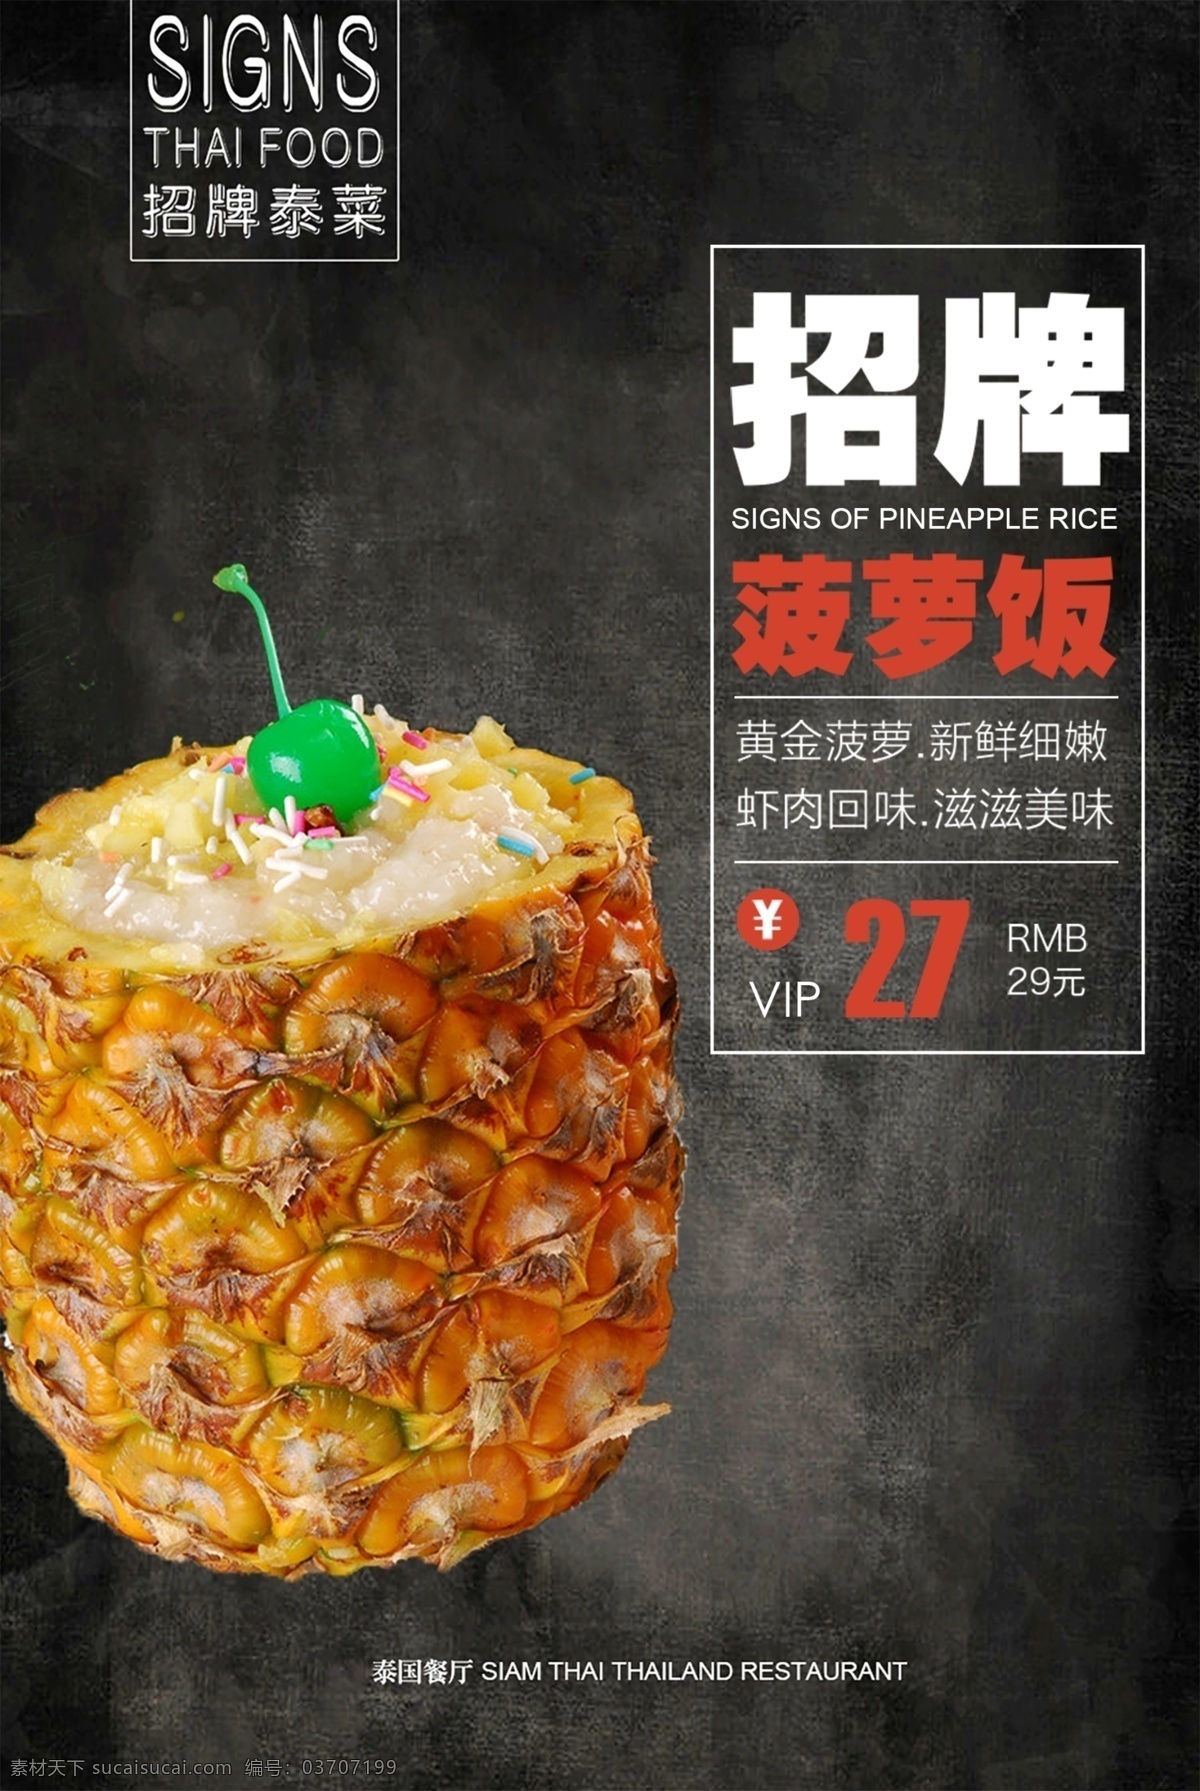 菠萝饭 中国美食 亚洲美食 西餐 美食海报 美食 菜单 菜谱 烧烤菜单 菜单海报 菜牌 菜单菜谱